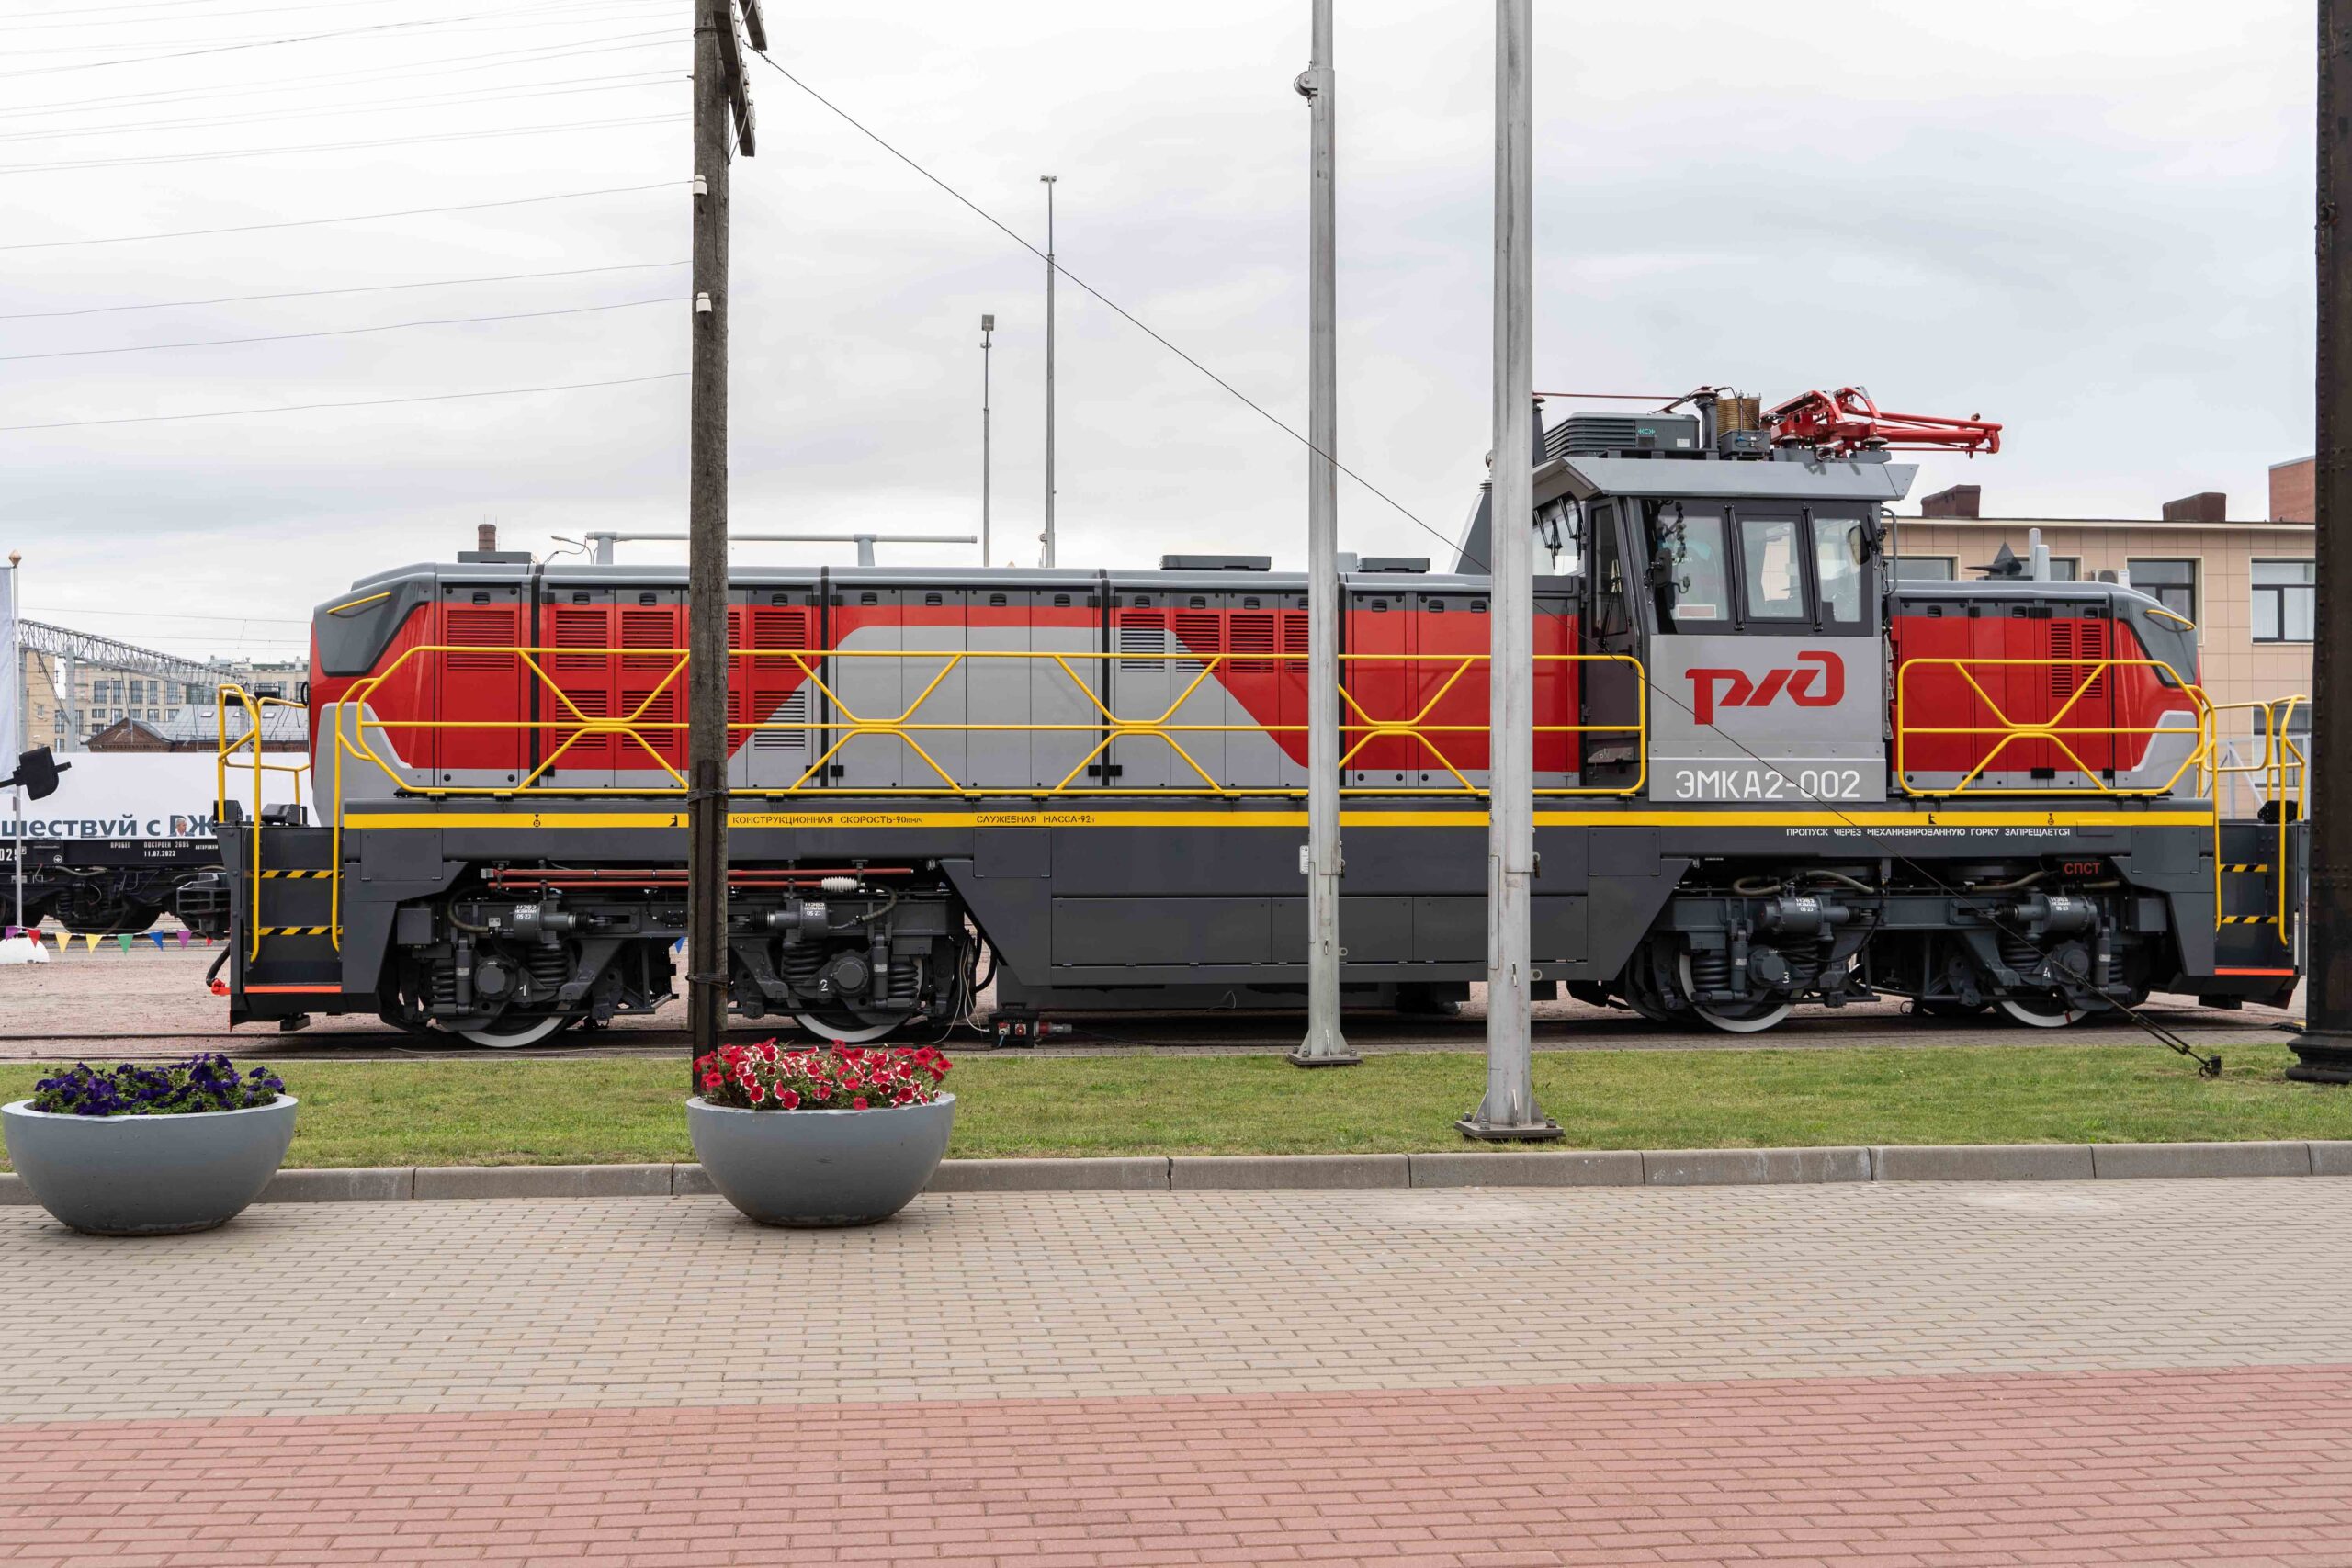 EMKA2 battery locomotive at the PRO//Motion.Expo Railway Fair